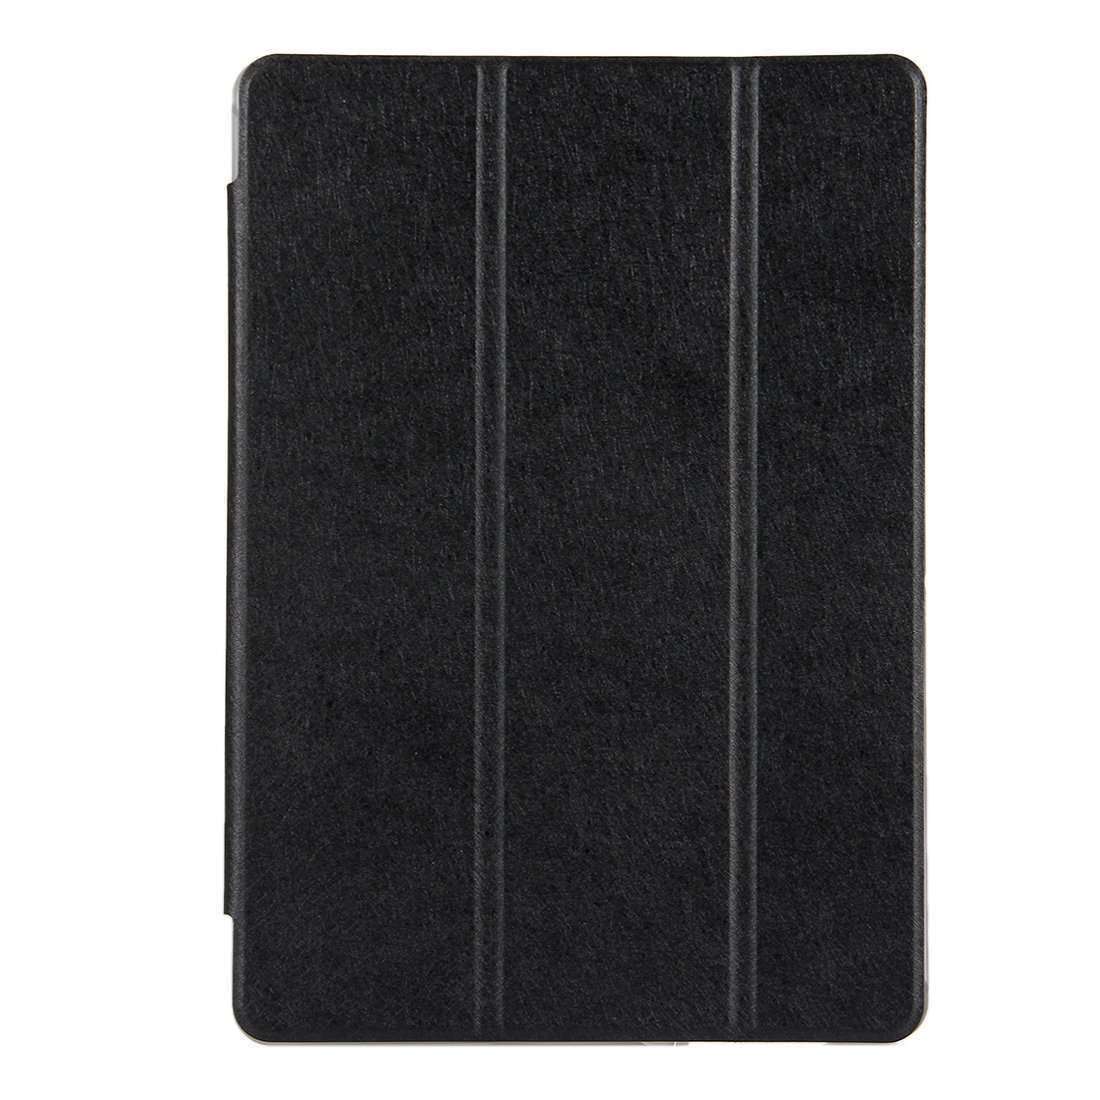 Huawei MediaPad T3 10 9.6 inch Black 3-fold Flip Case